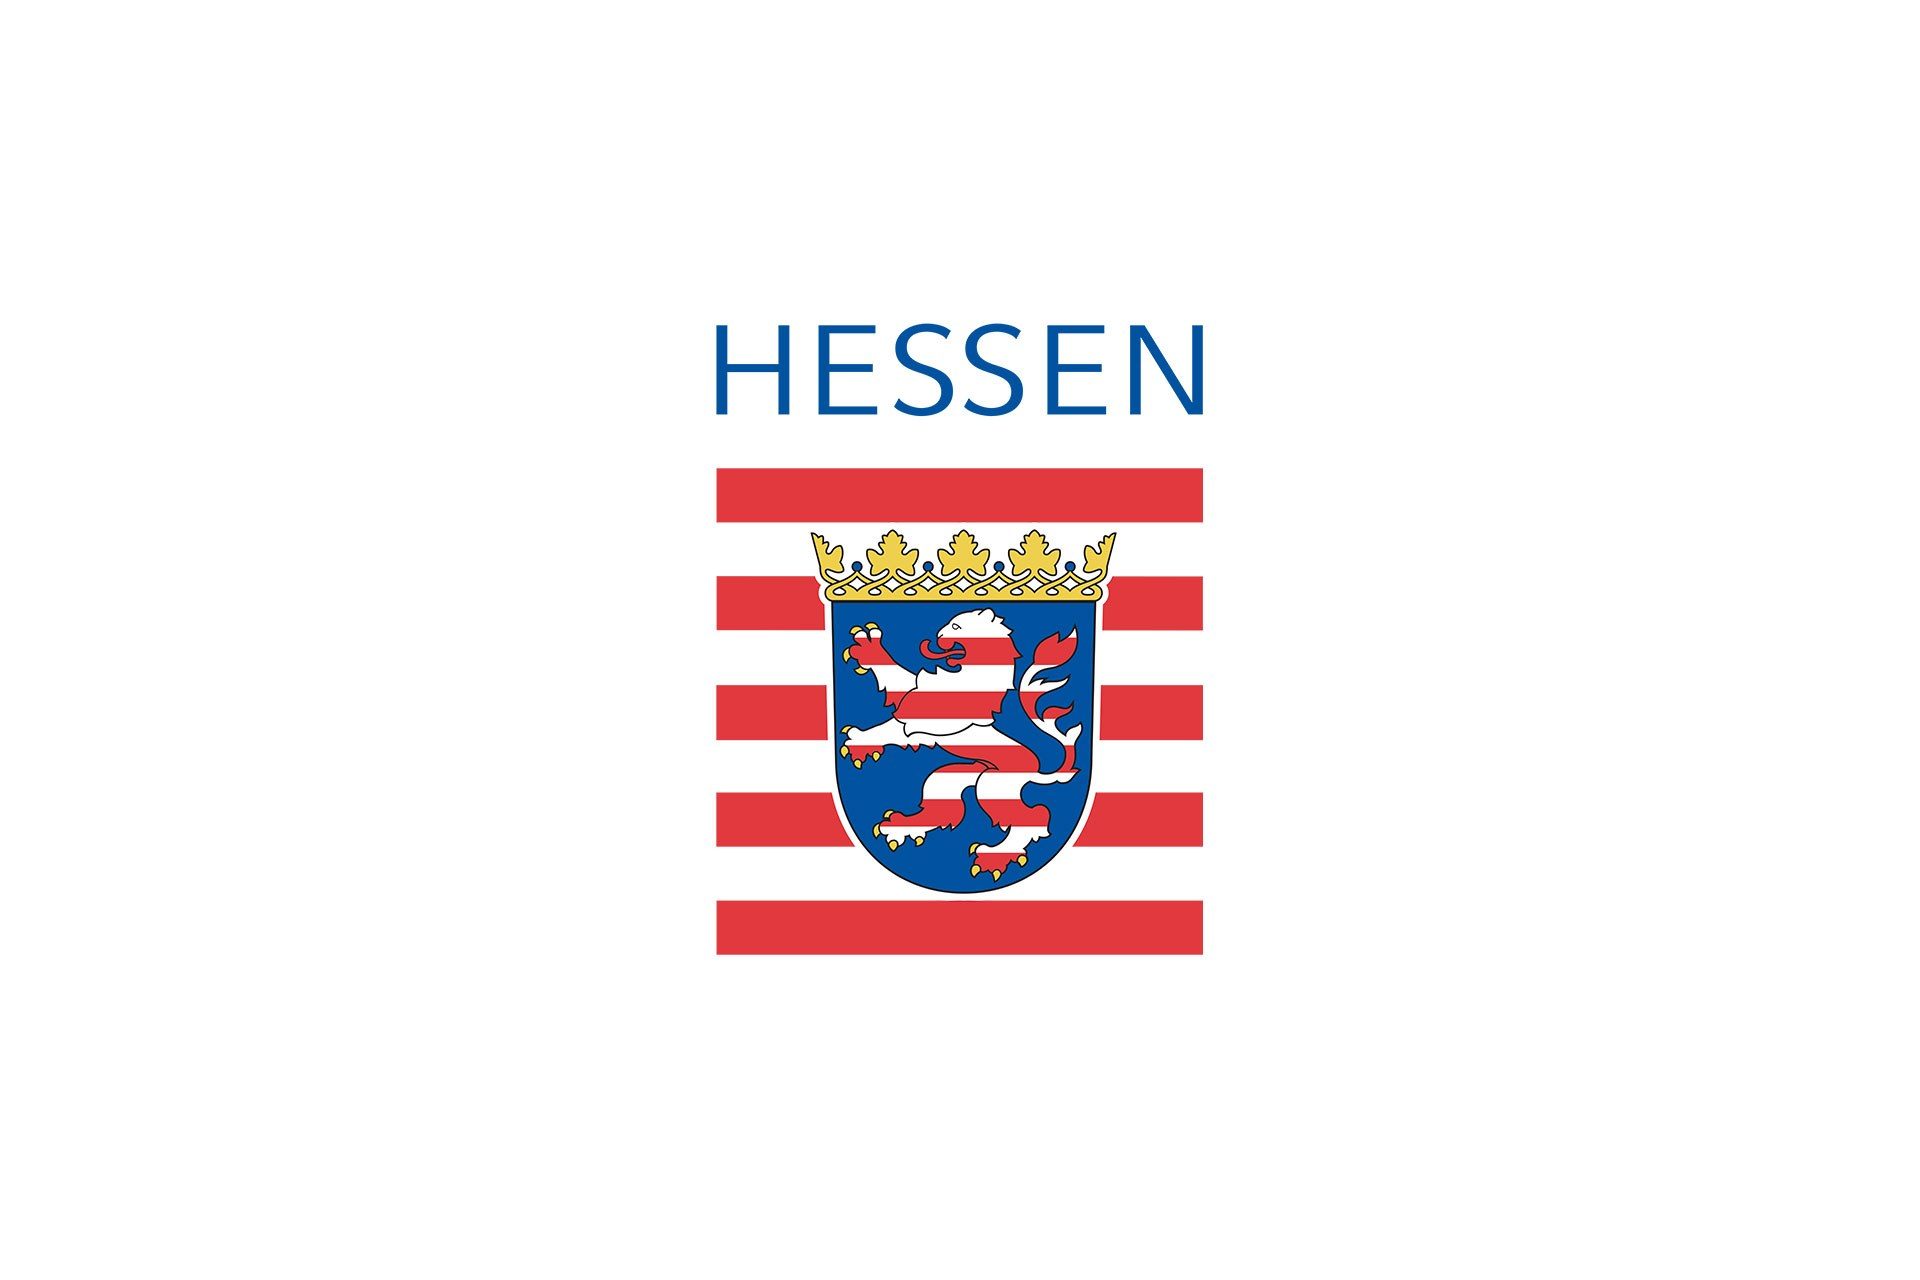 Hessen Wappen 1920 1280